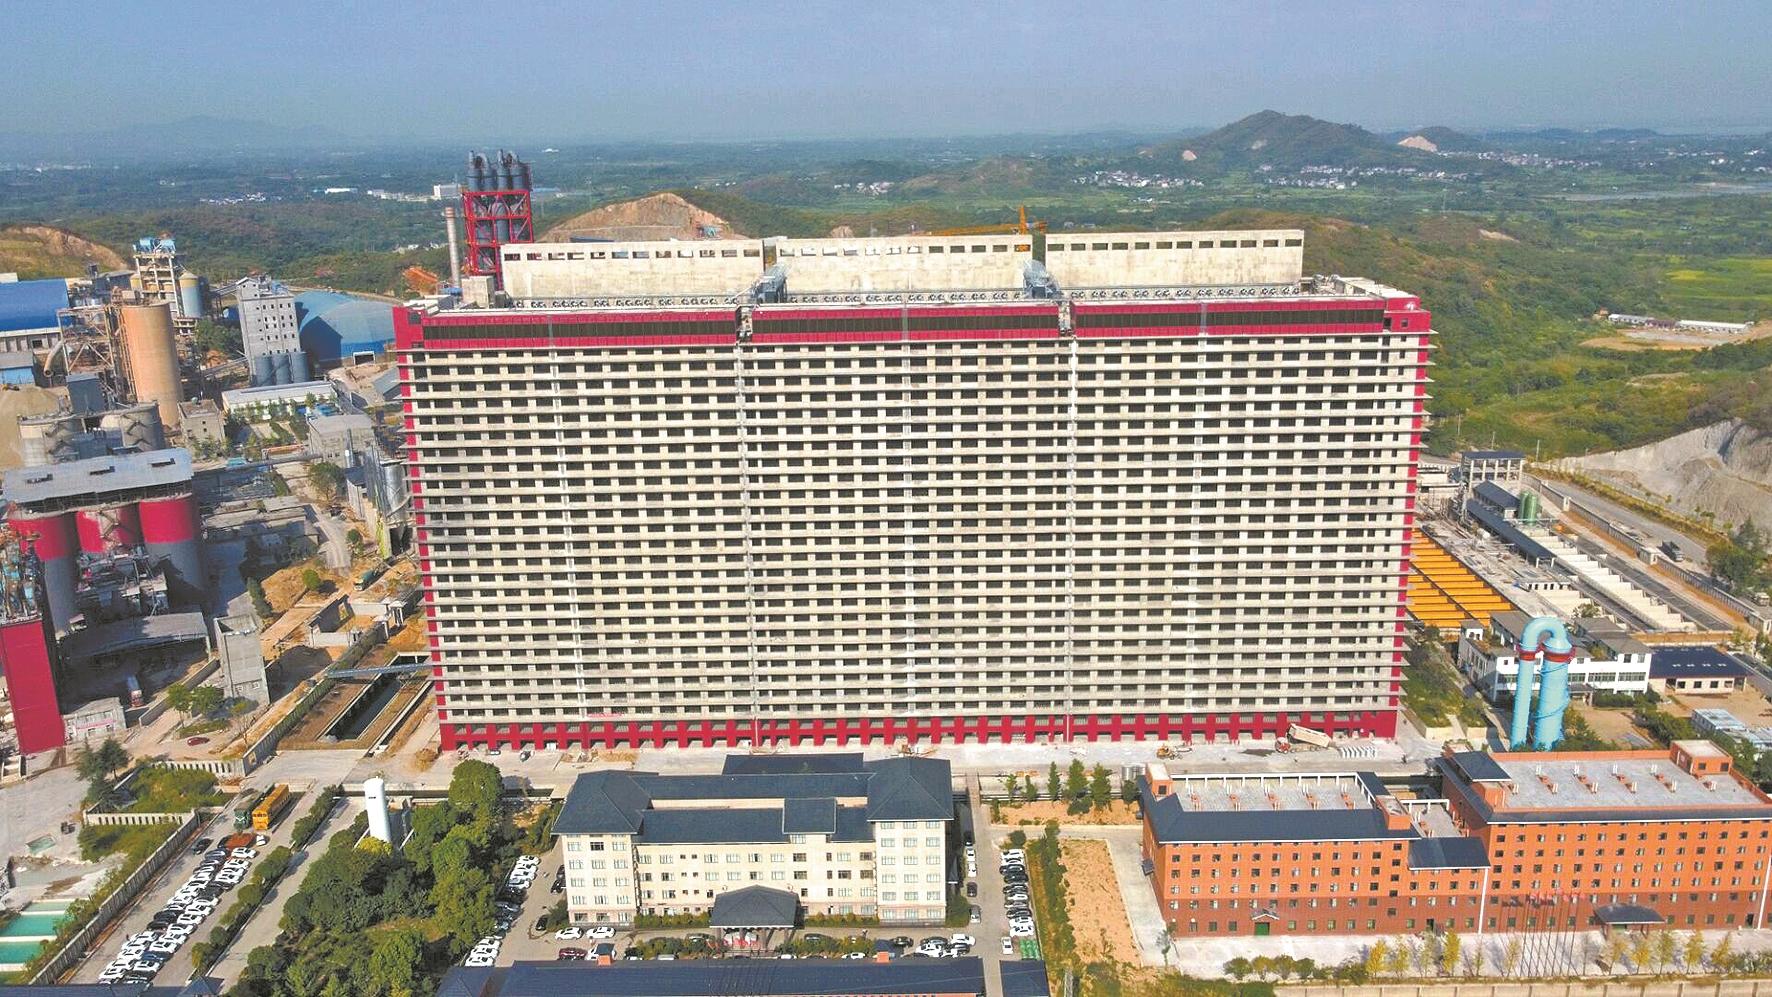 全国单体面积最大养猪大楼鄂州投用 3700头猪将入住26层高楼